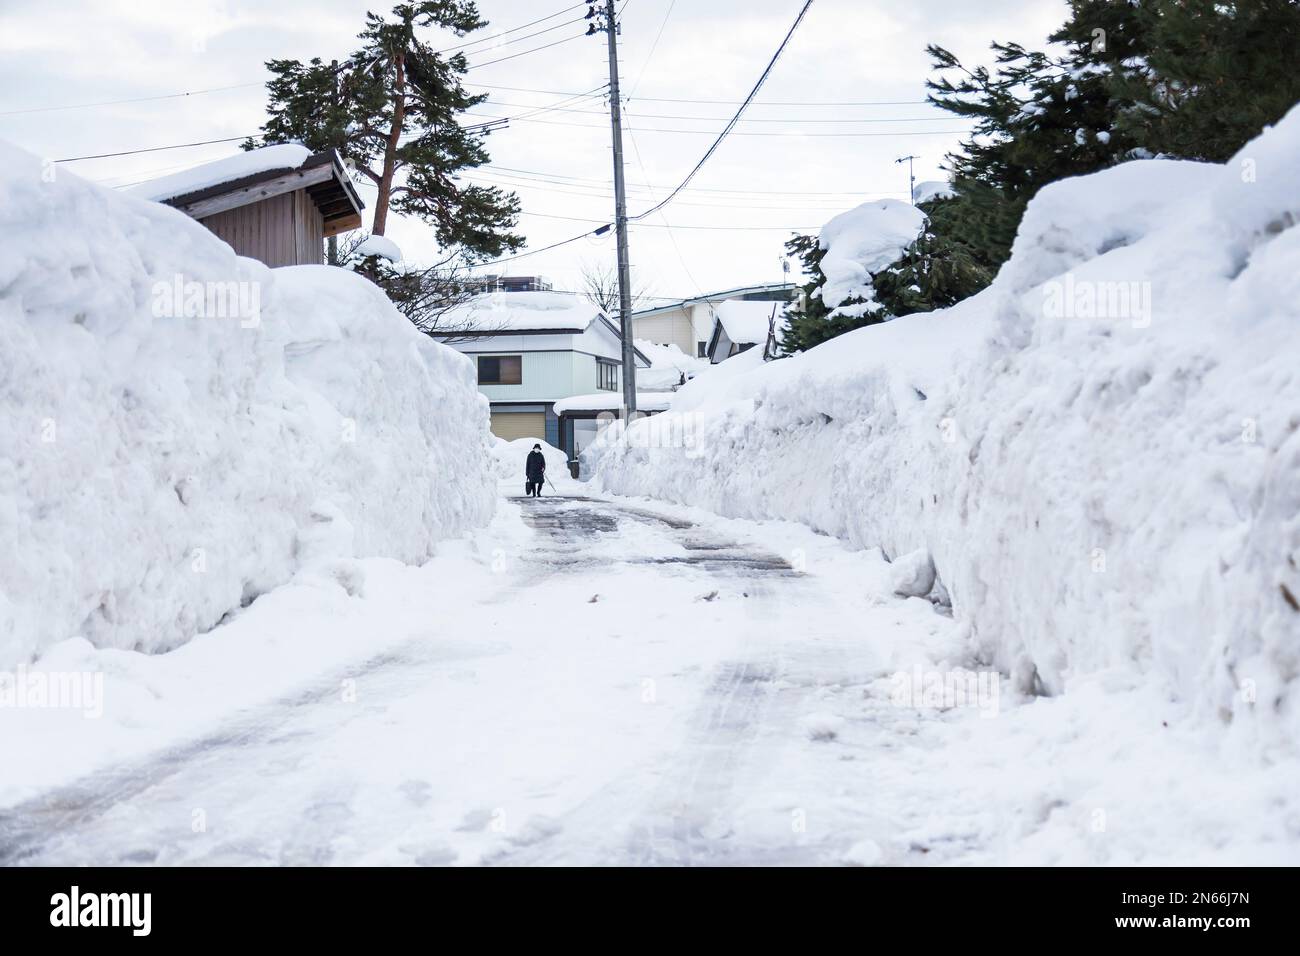 Mur de neige dans la rue, la vie dans un pays de neige, ville célèbre par la neige lourde, ville de Yokote, Akita, Tohoku, Japon, Asie de l'est, Asie Banque D'Images